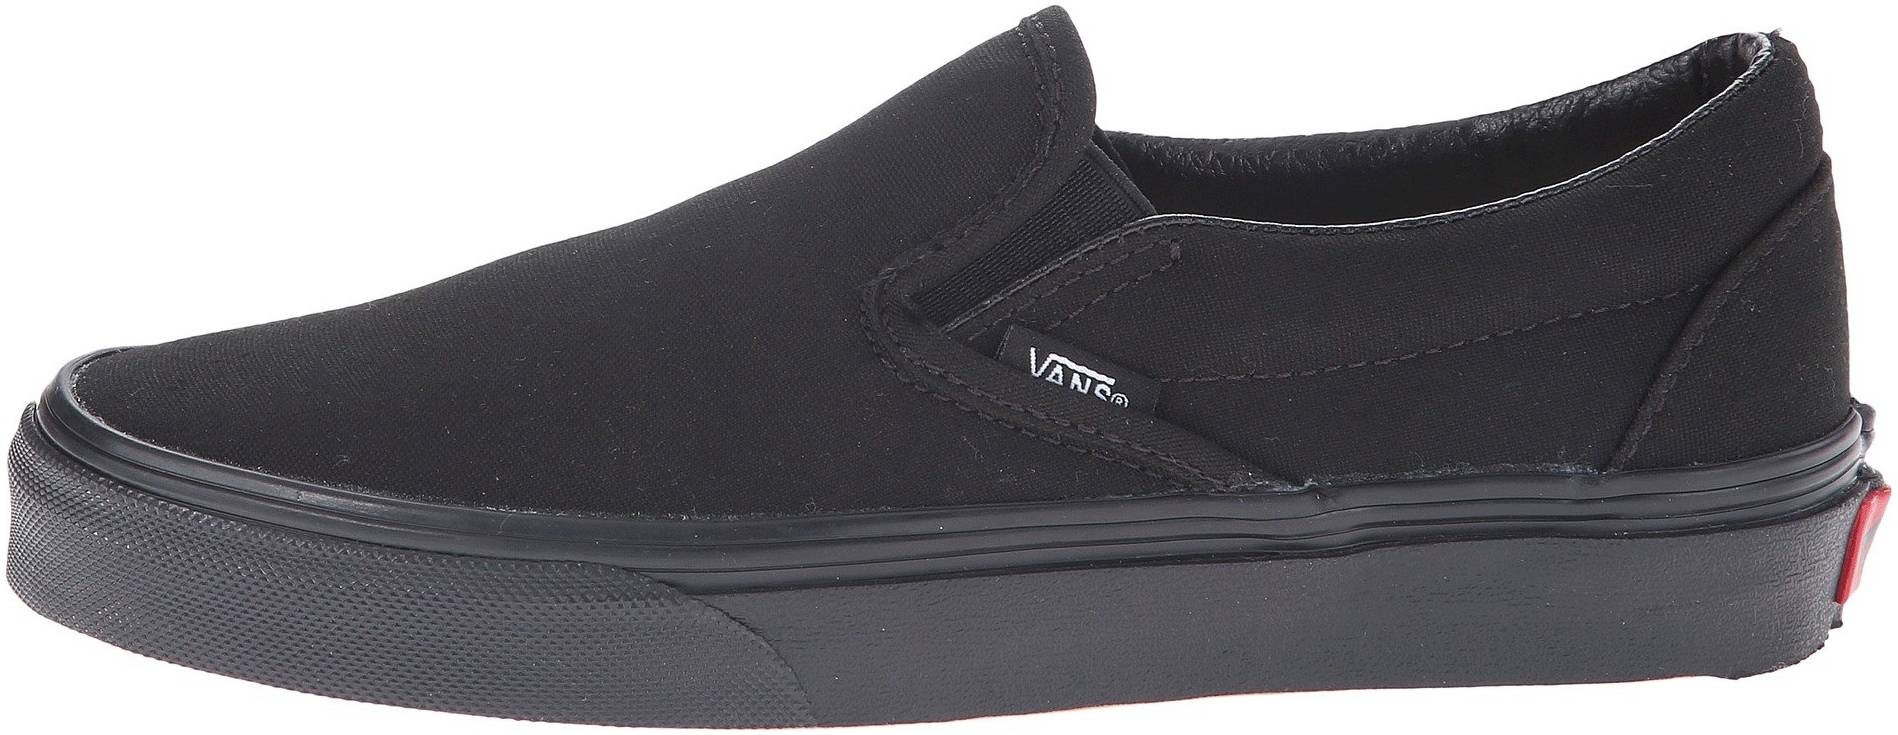 Vans Slip-On sneakers 50+ colors (only $28)